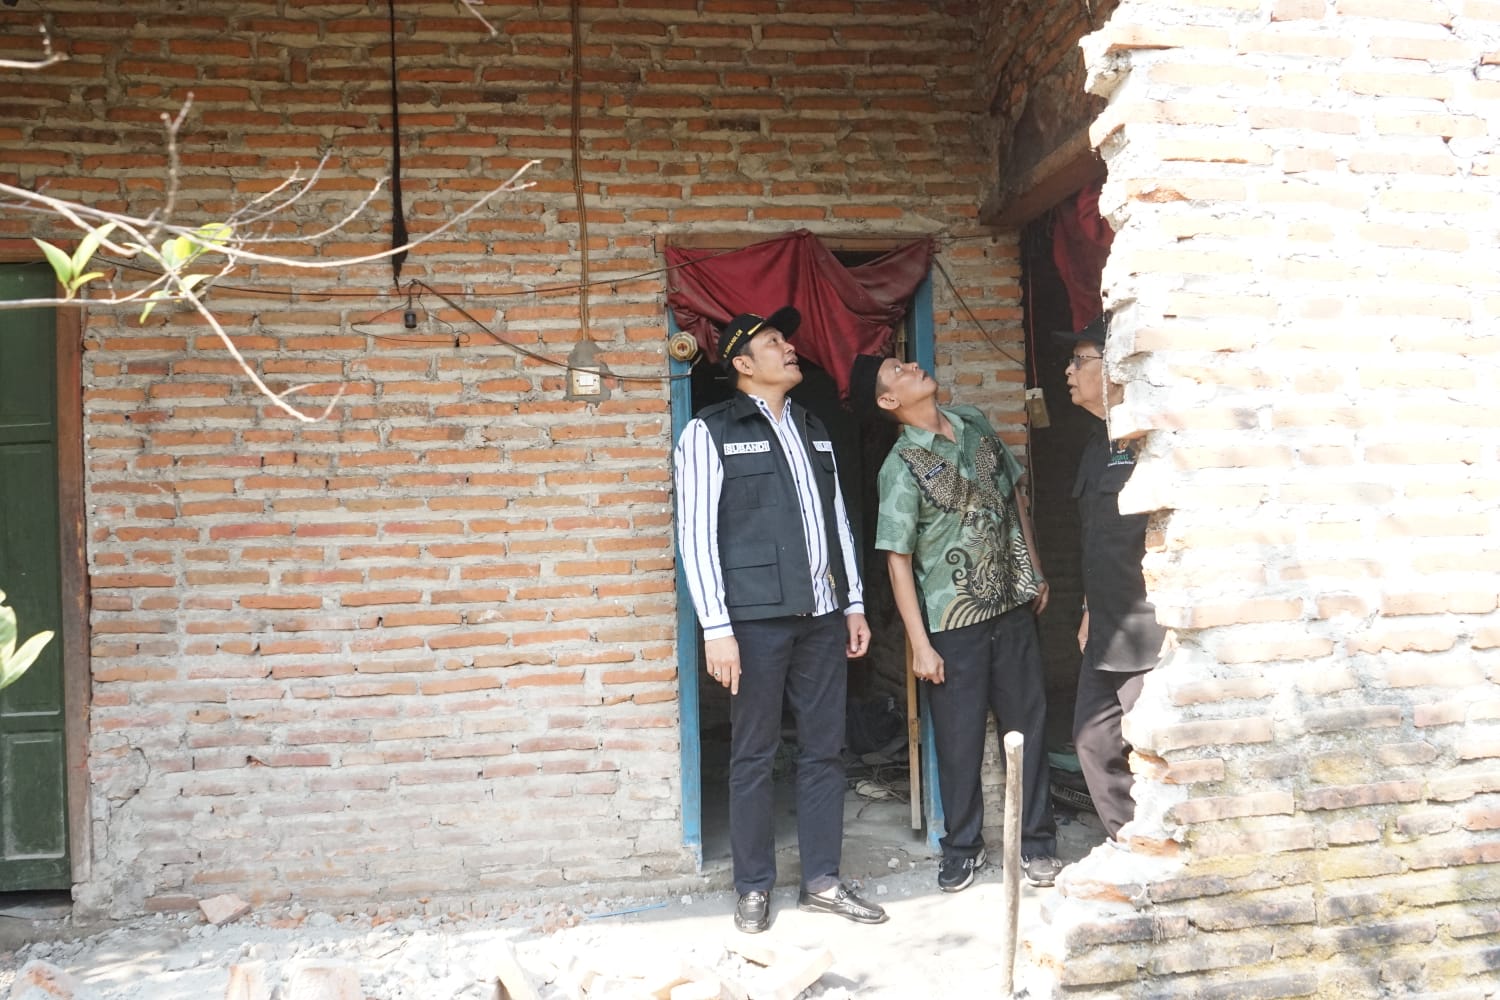 Wabup Subandi : Bedah Rumah Tidak Layak Huni Jadi Prioritasnya